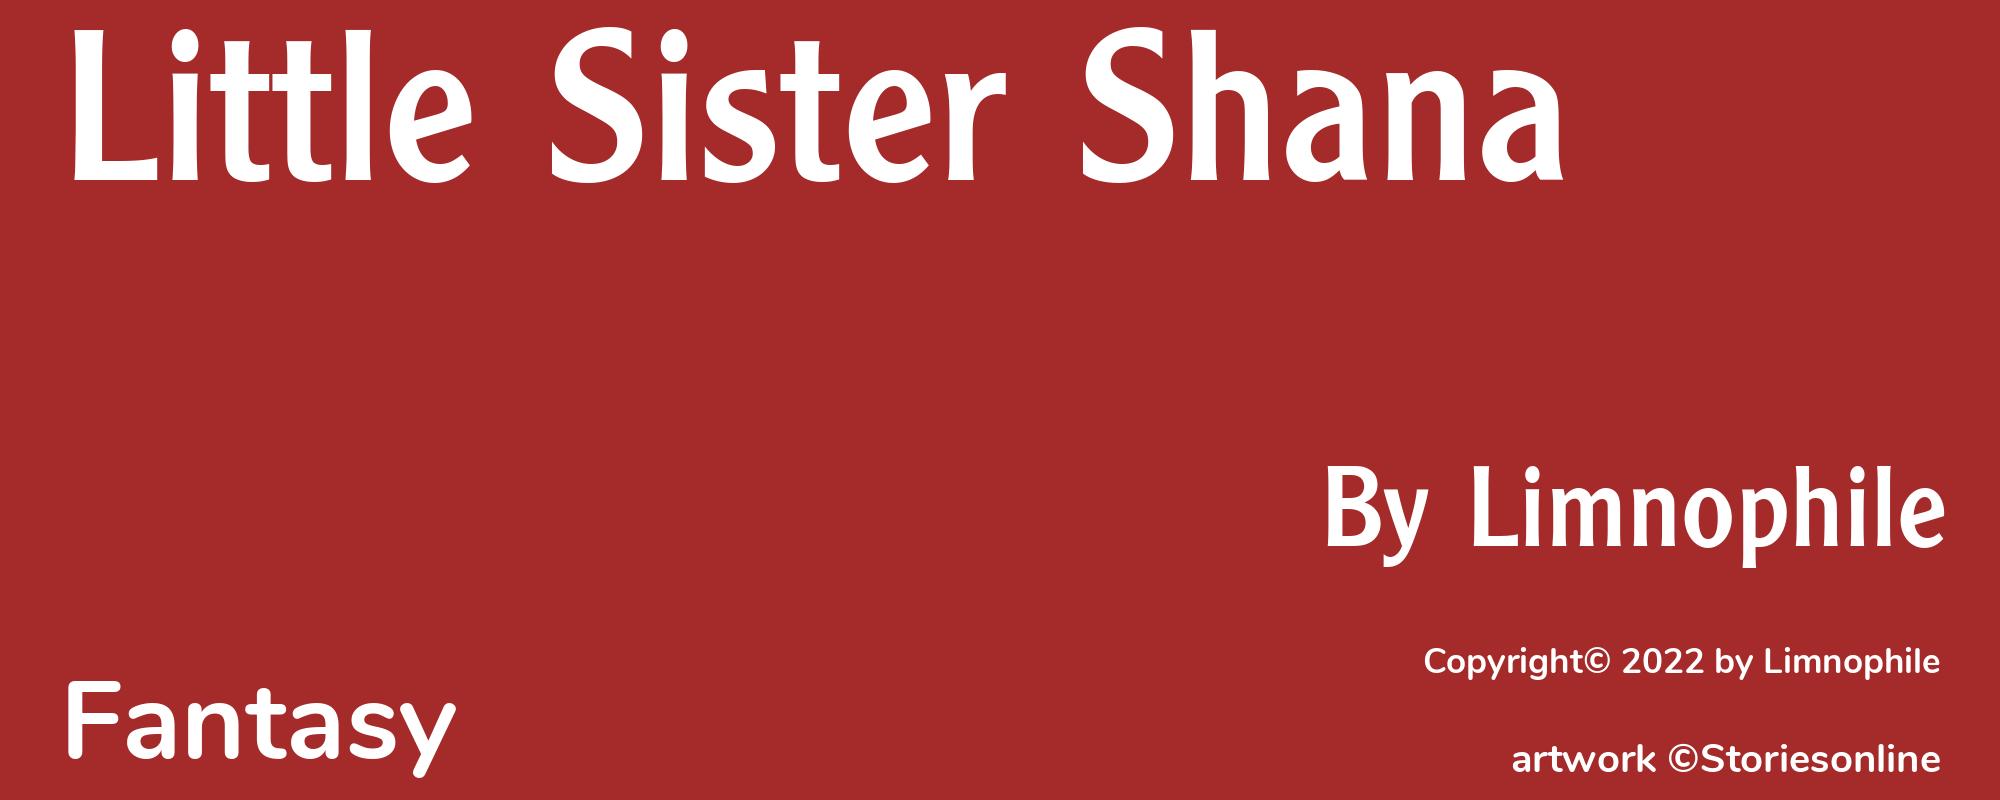 Little Sister Shana - Cover